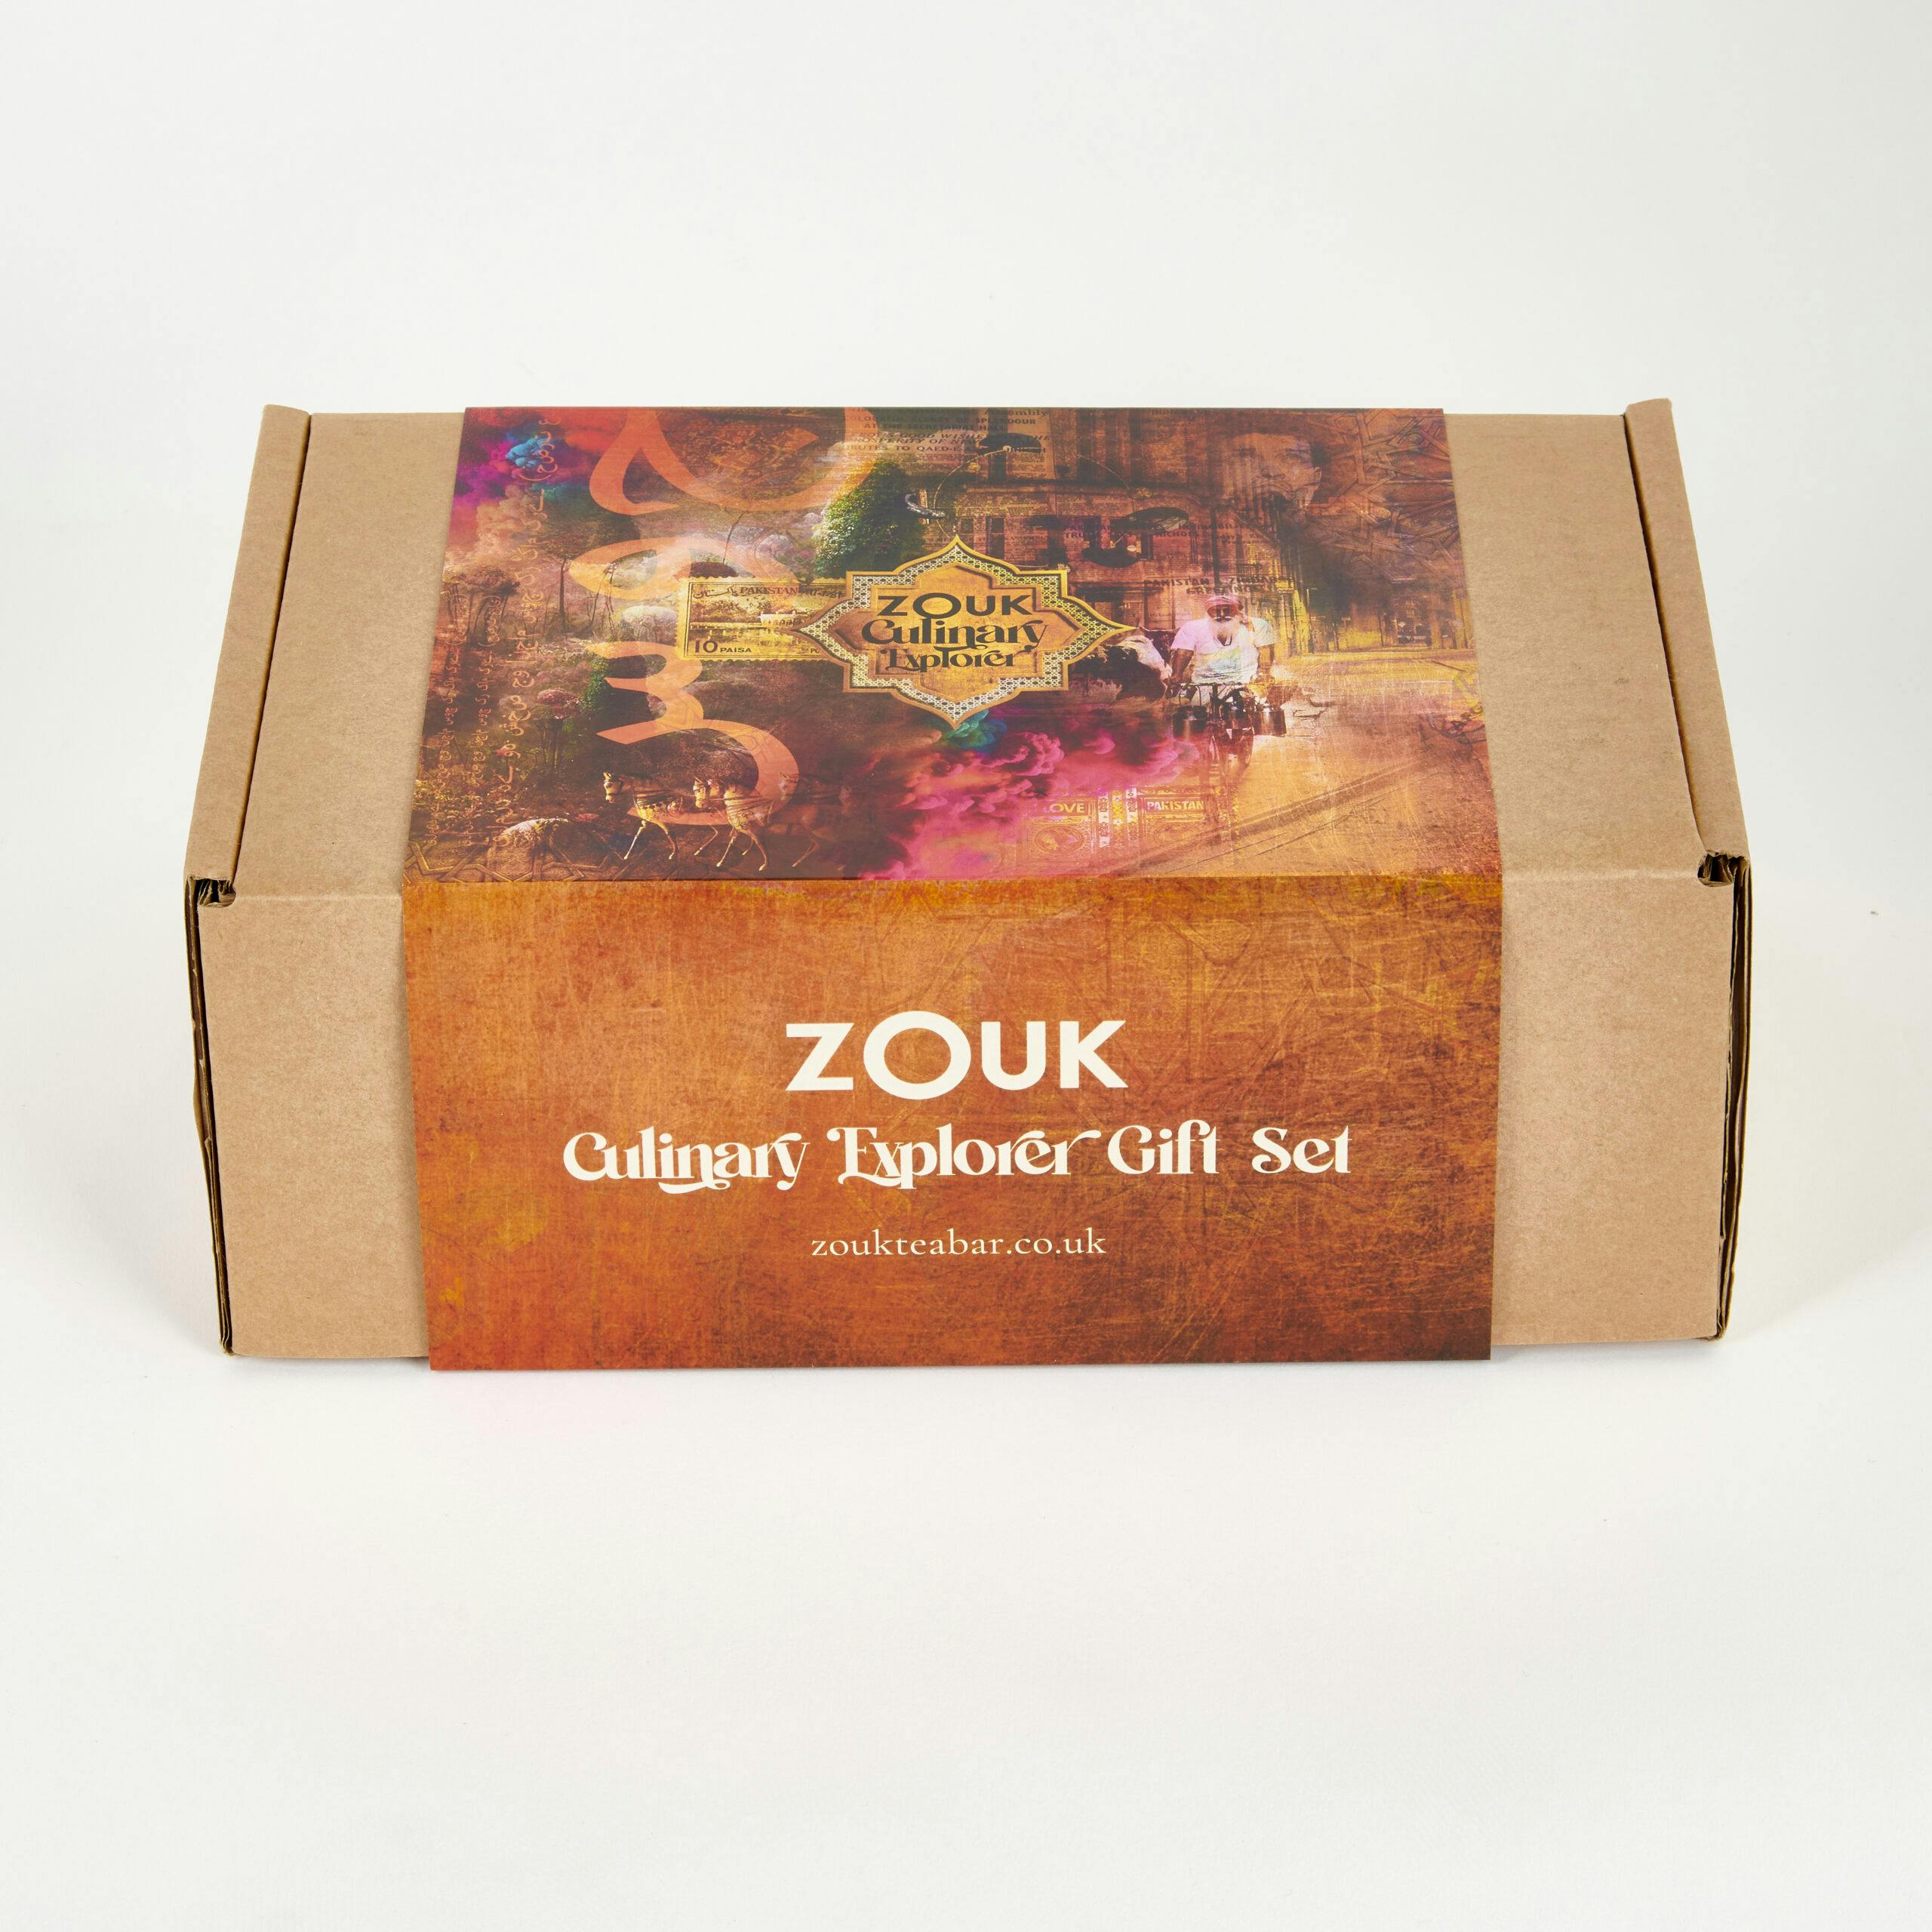 Zouk's Culinary Explorer's Gift Set